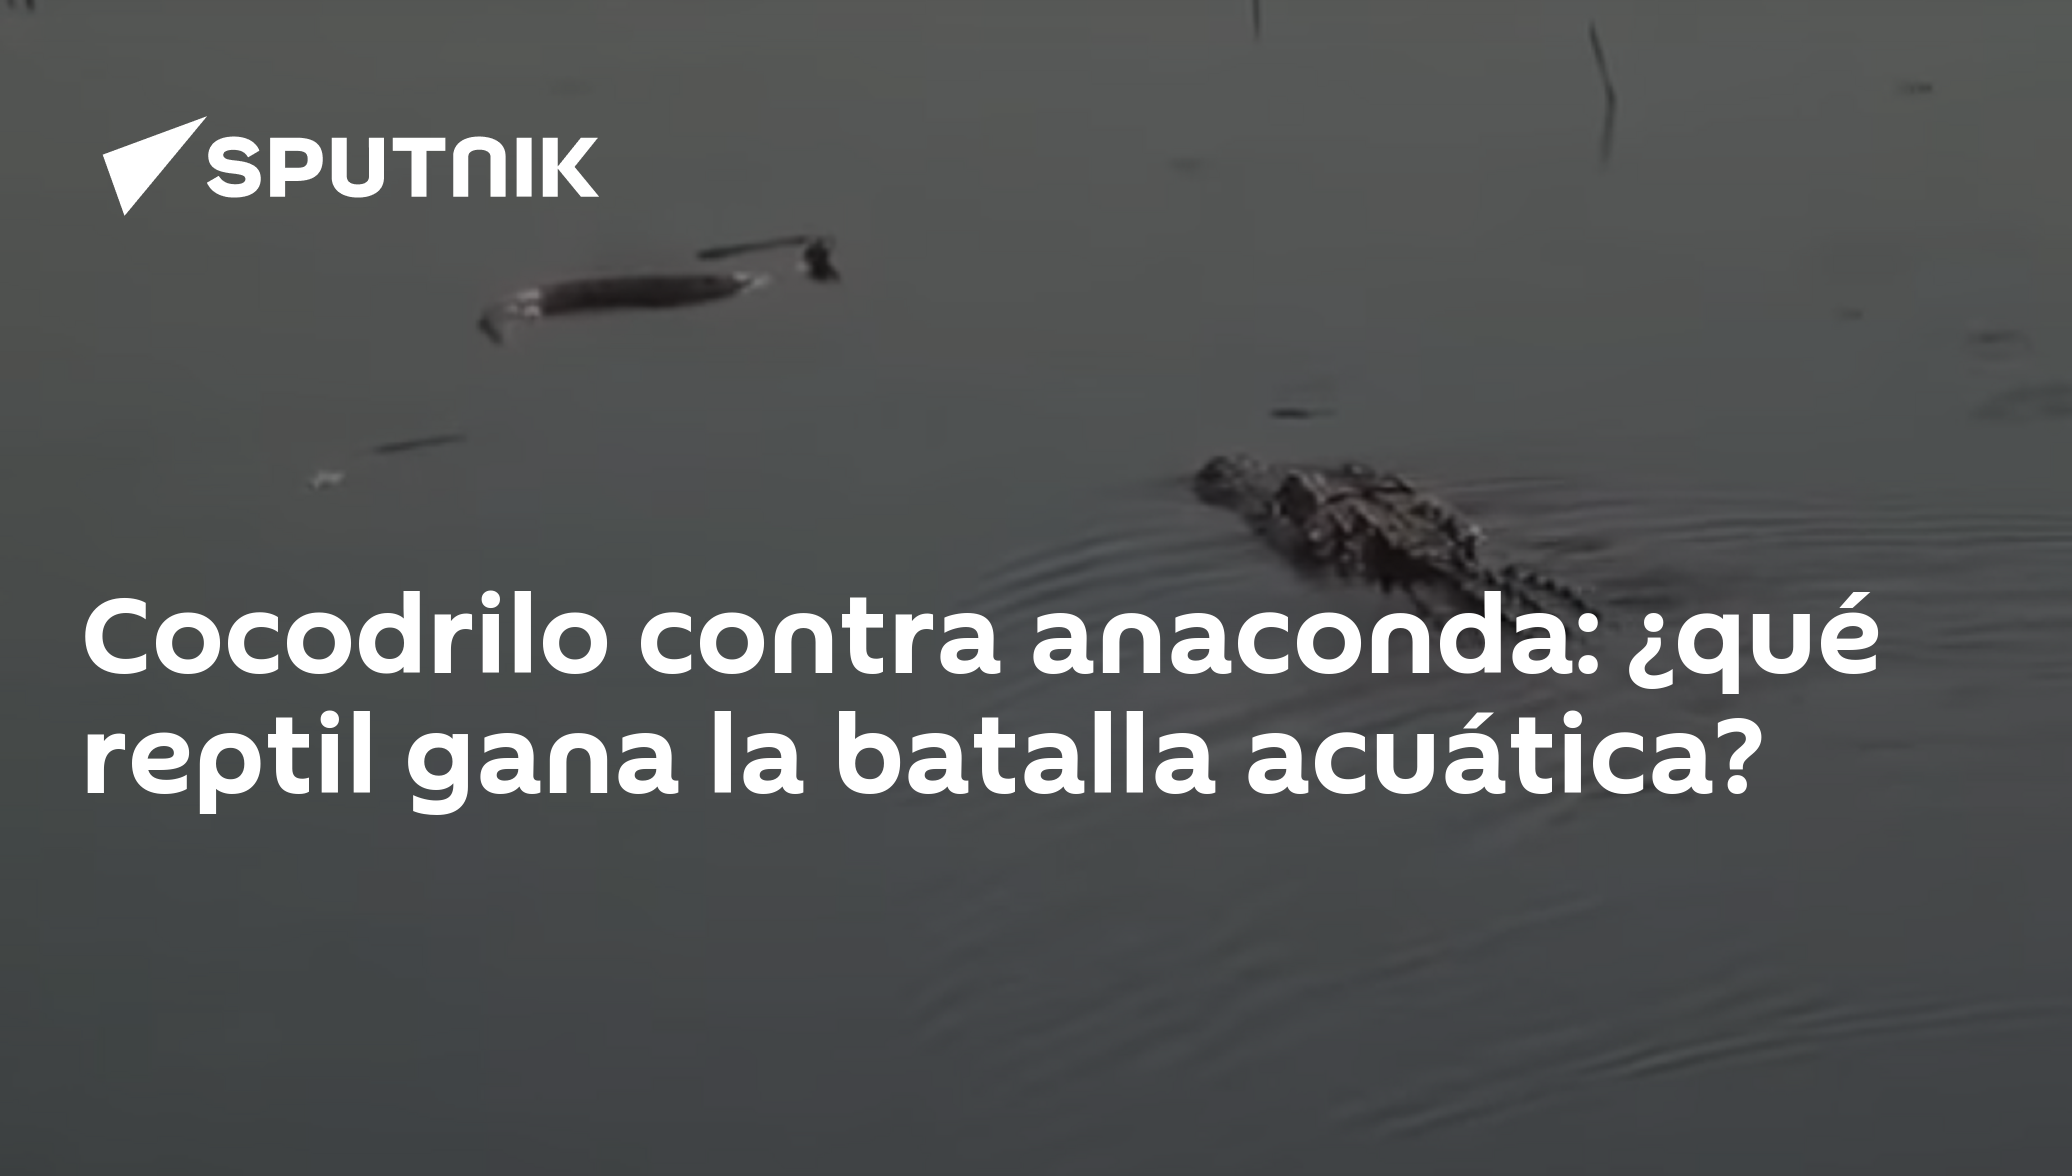 Cocodrilo contra anaconda: ¿qué reptil gana la batalla acuática? -  , Sputnik Mundo